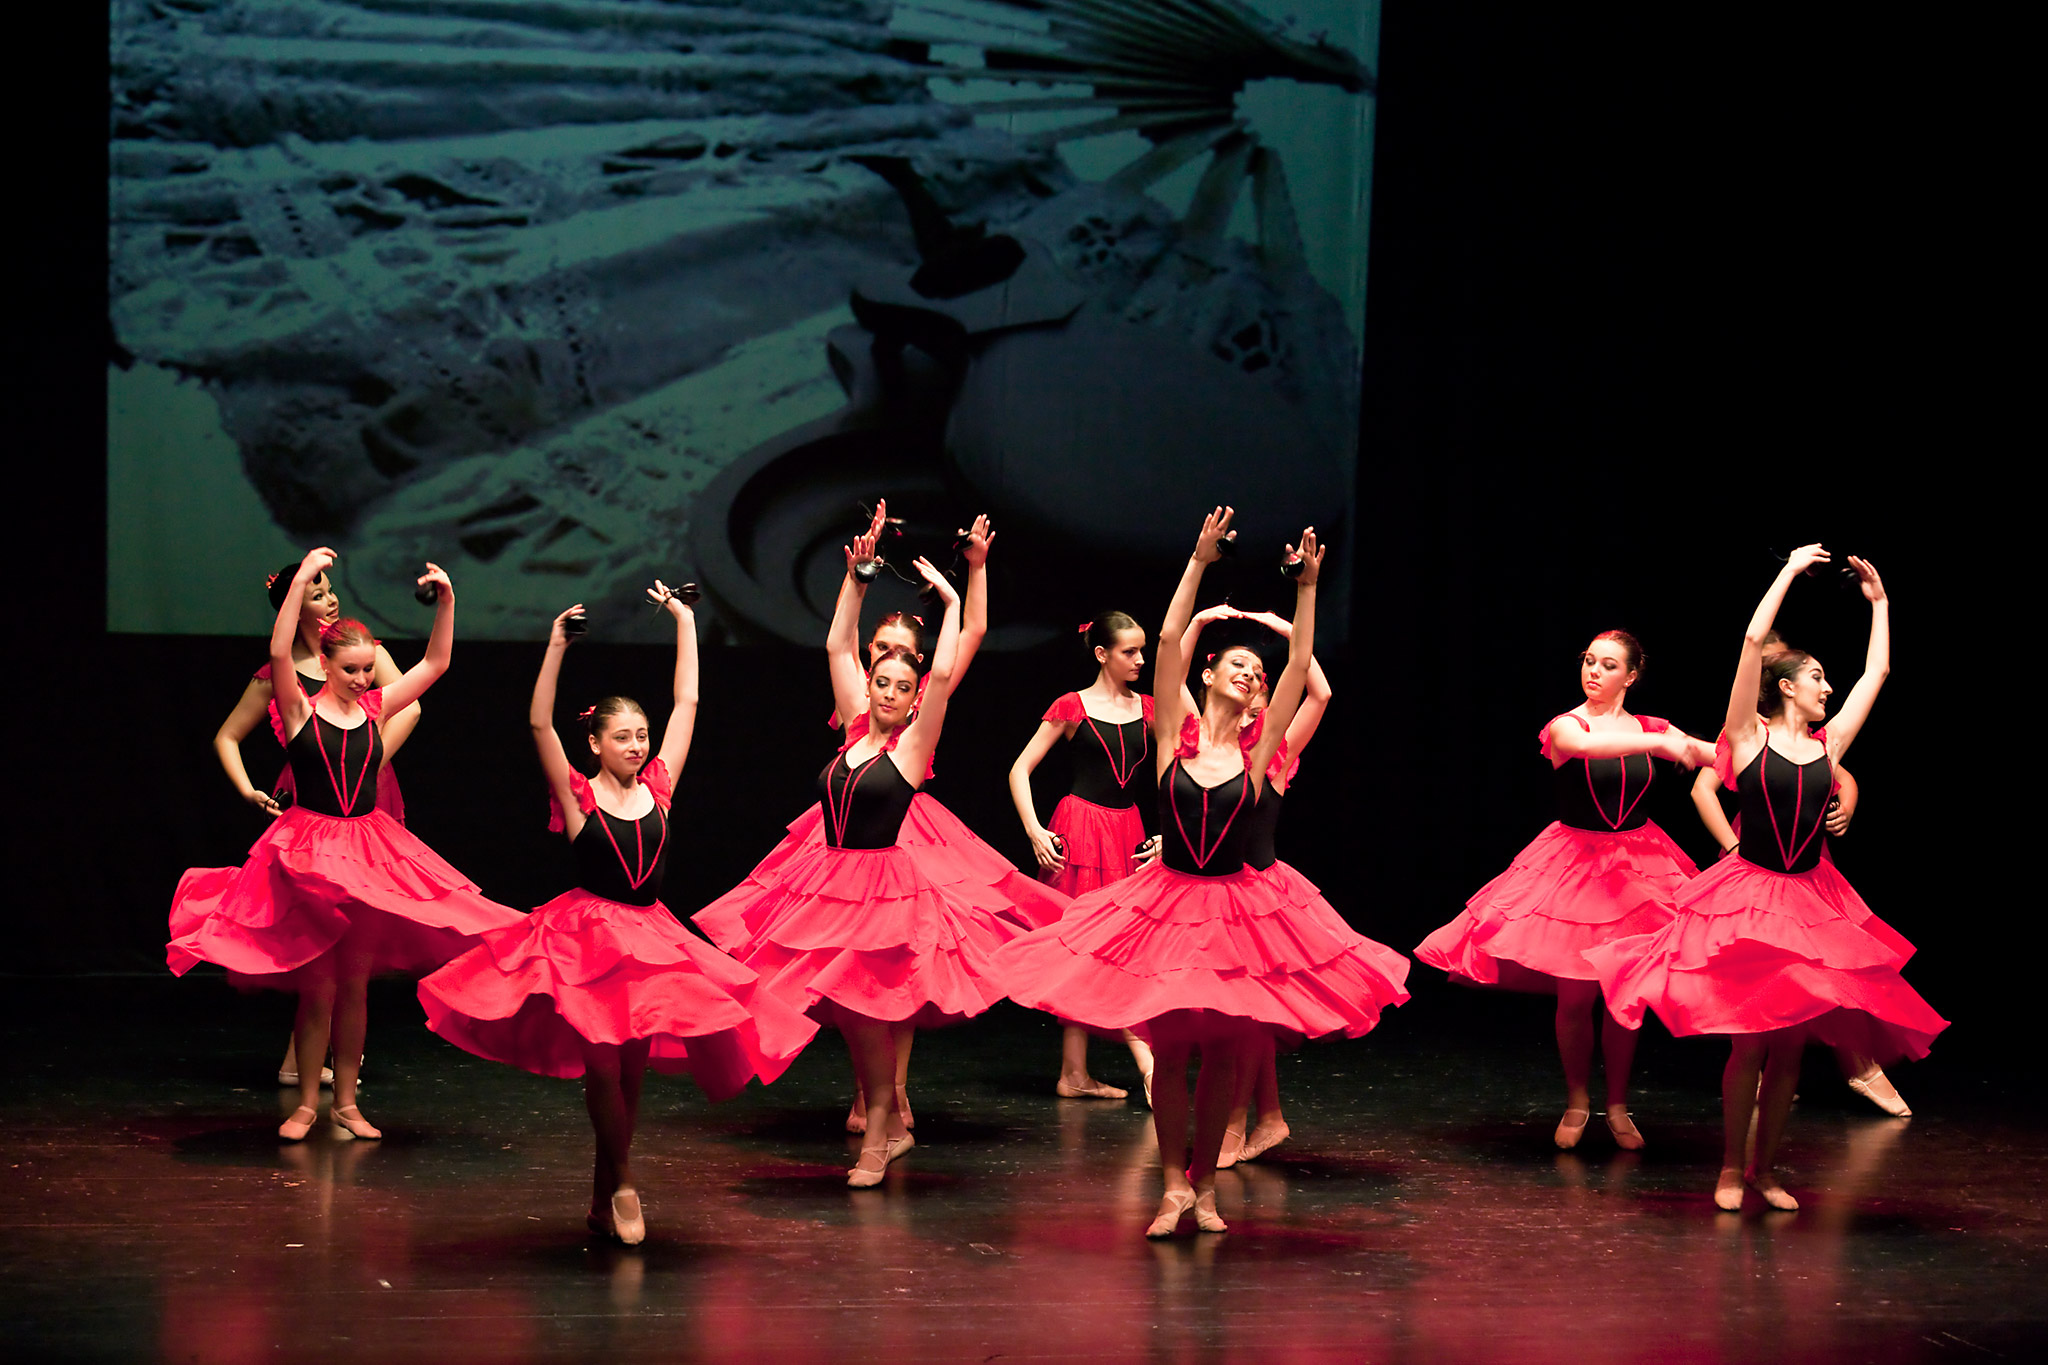 Danza estilizada - image MG_2498 on http://danzasturias.es